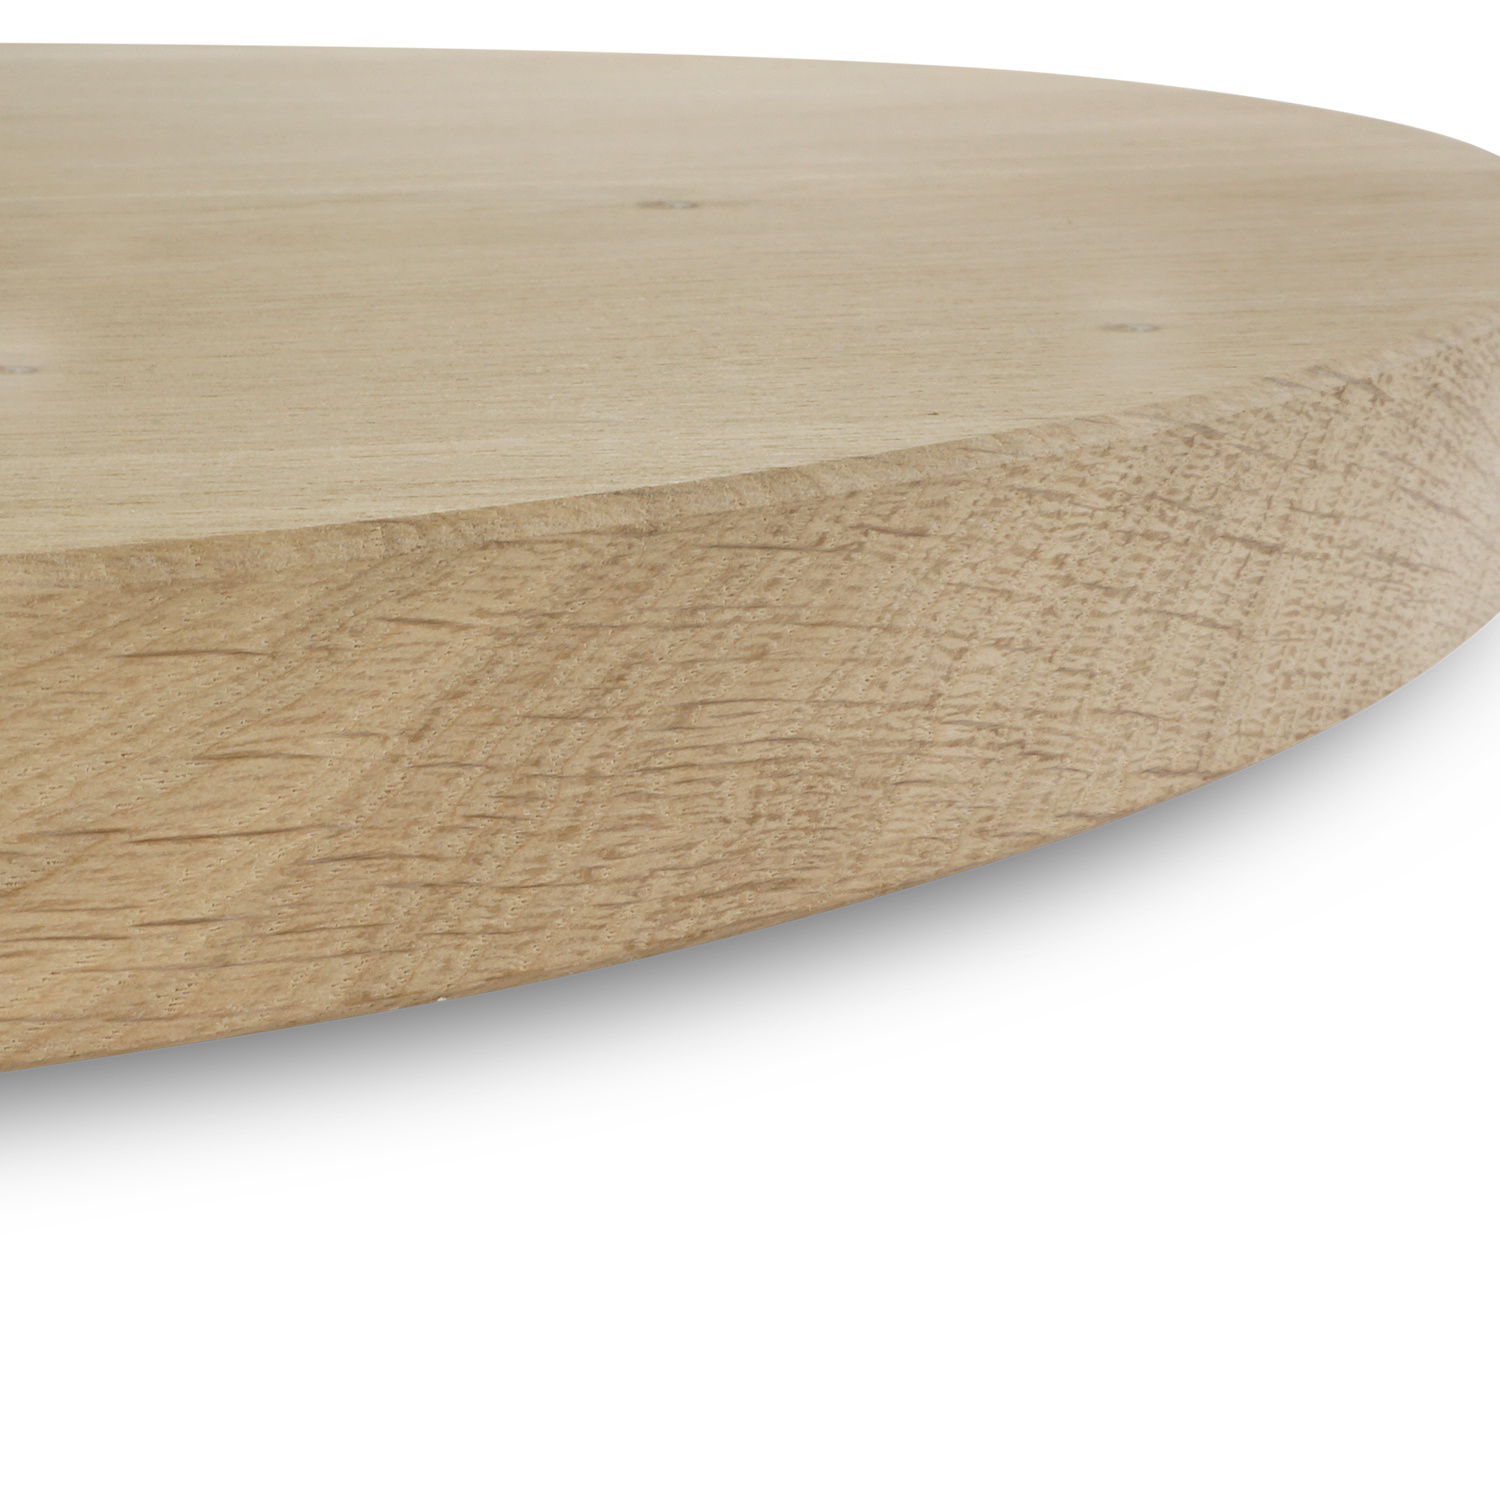  Tischplatte Eiche oval - 4 cm dick (1-Schicht) - Breite Lamellen (10 - 12 cm breit) - Eichenholz A-Qualität - Tischplatte ovale / ellipse Eiche - verleimt & künstlich getrocknet (HF 8-12%) - verschiedene Größen